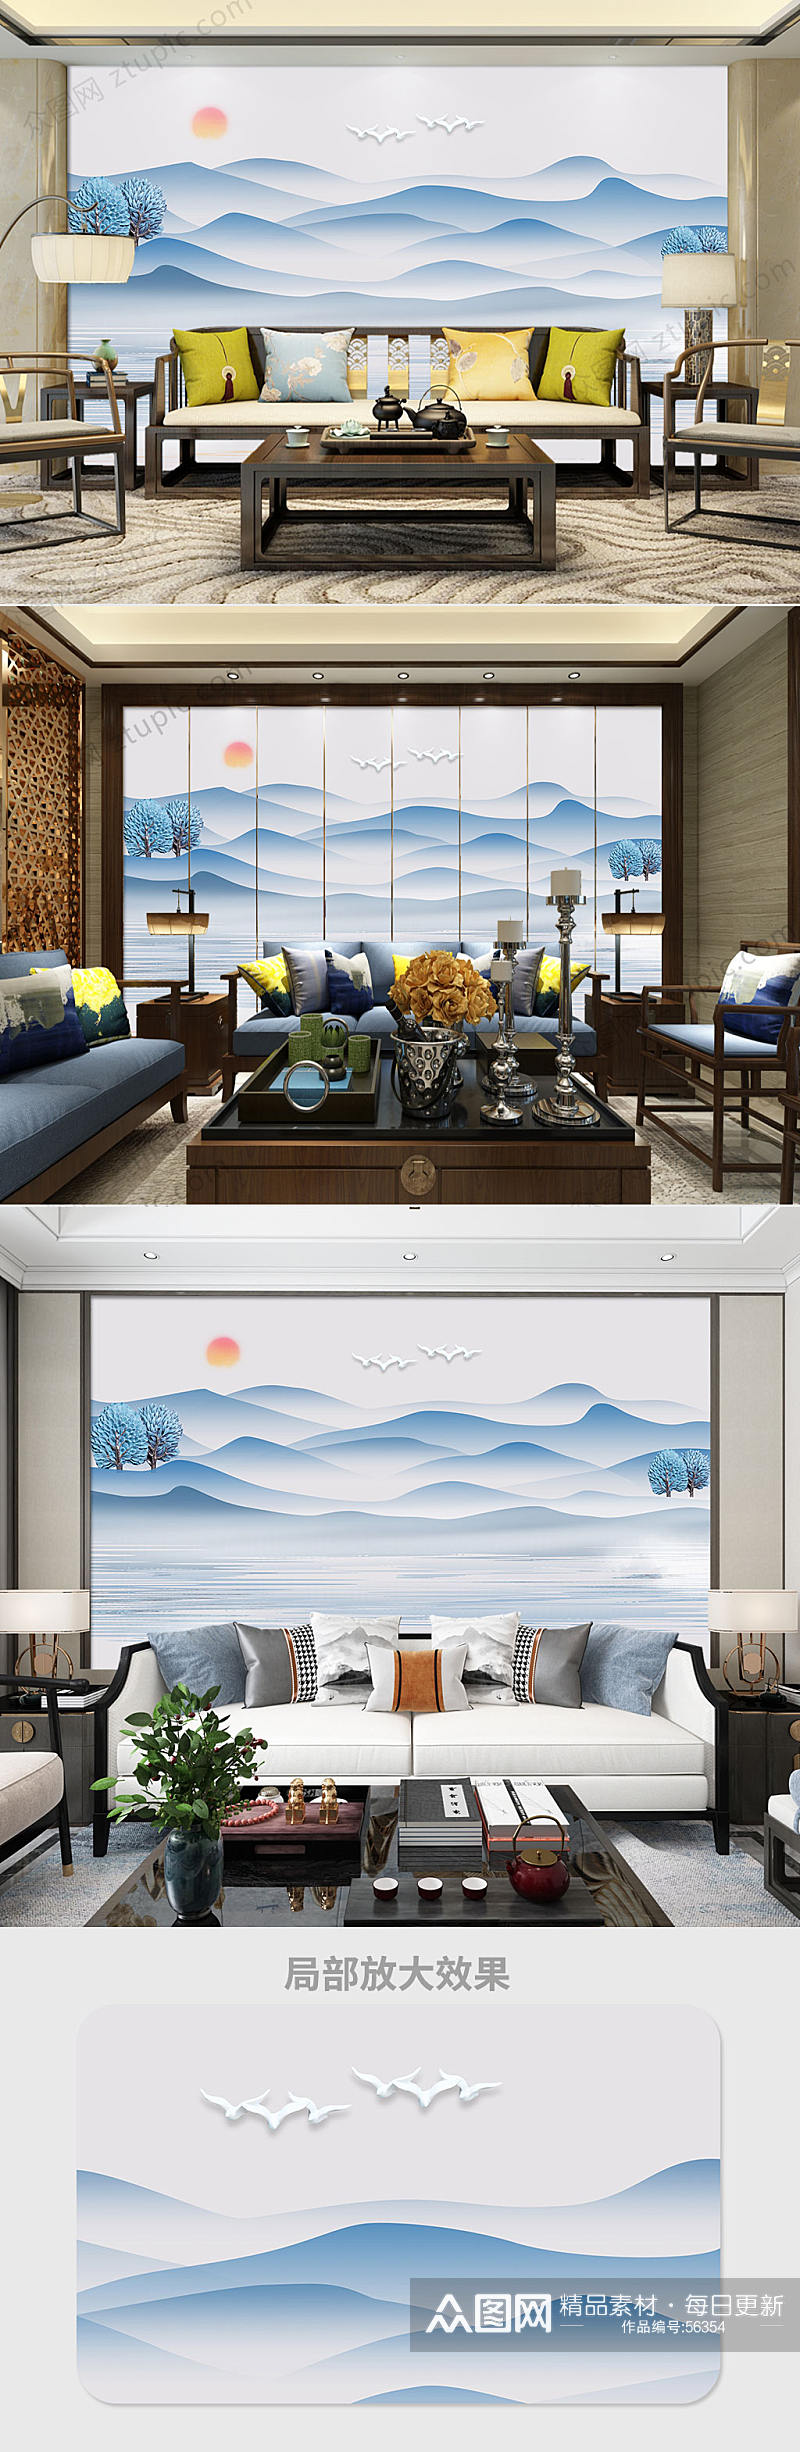 新中式蓝色水墨山水背景墙素材